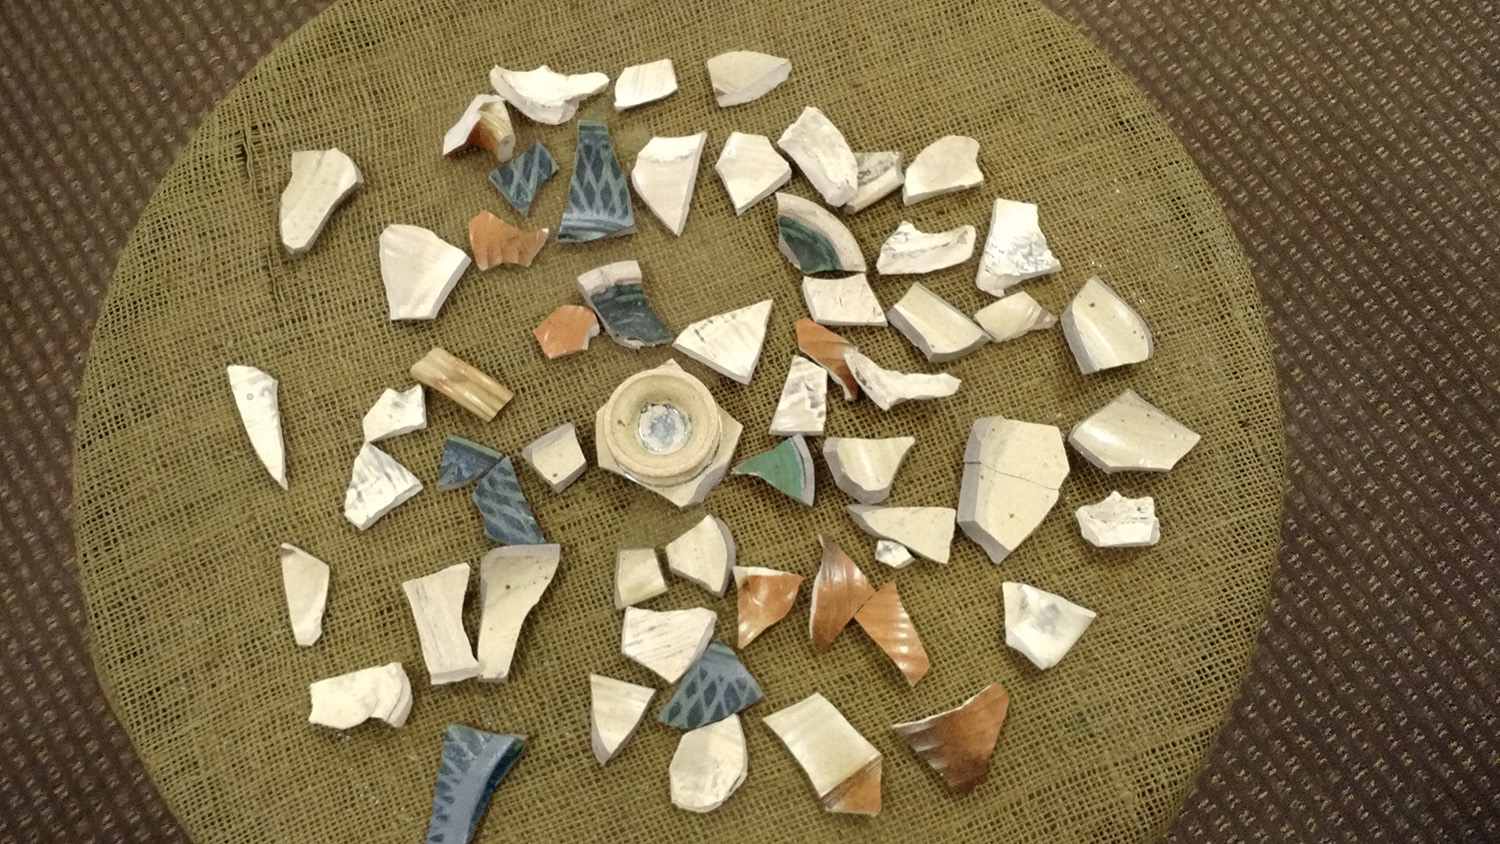 Pottery shards